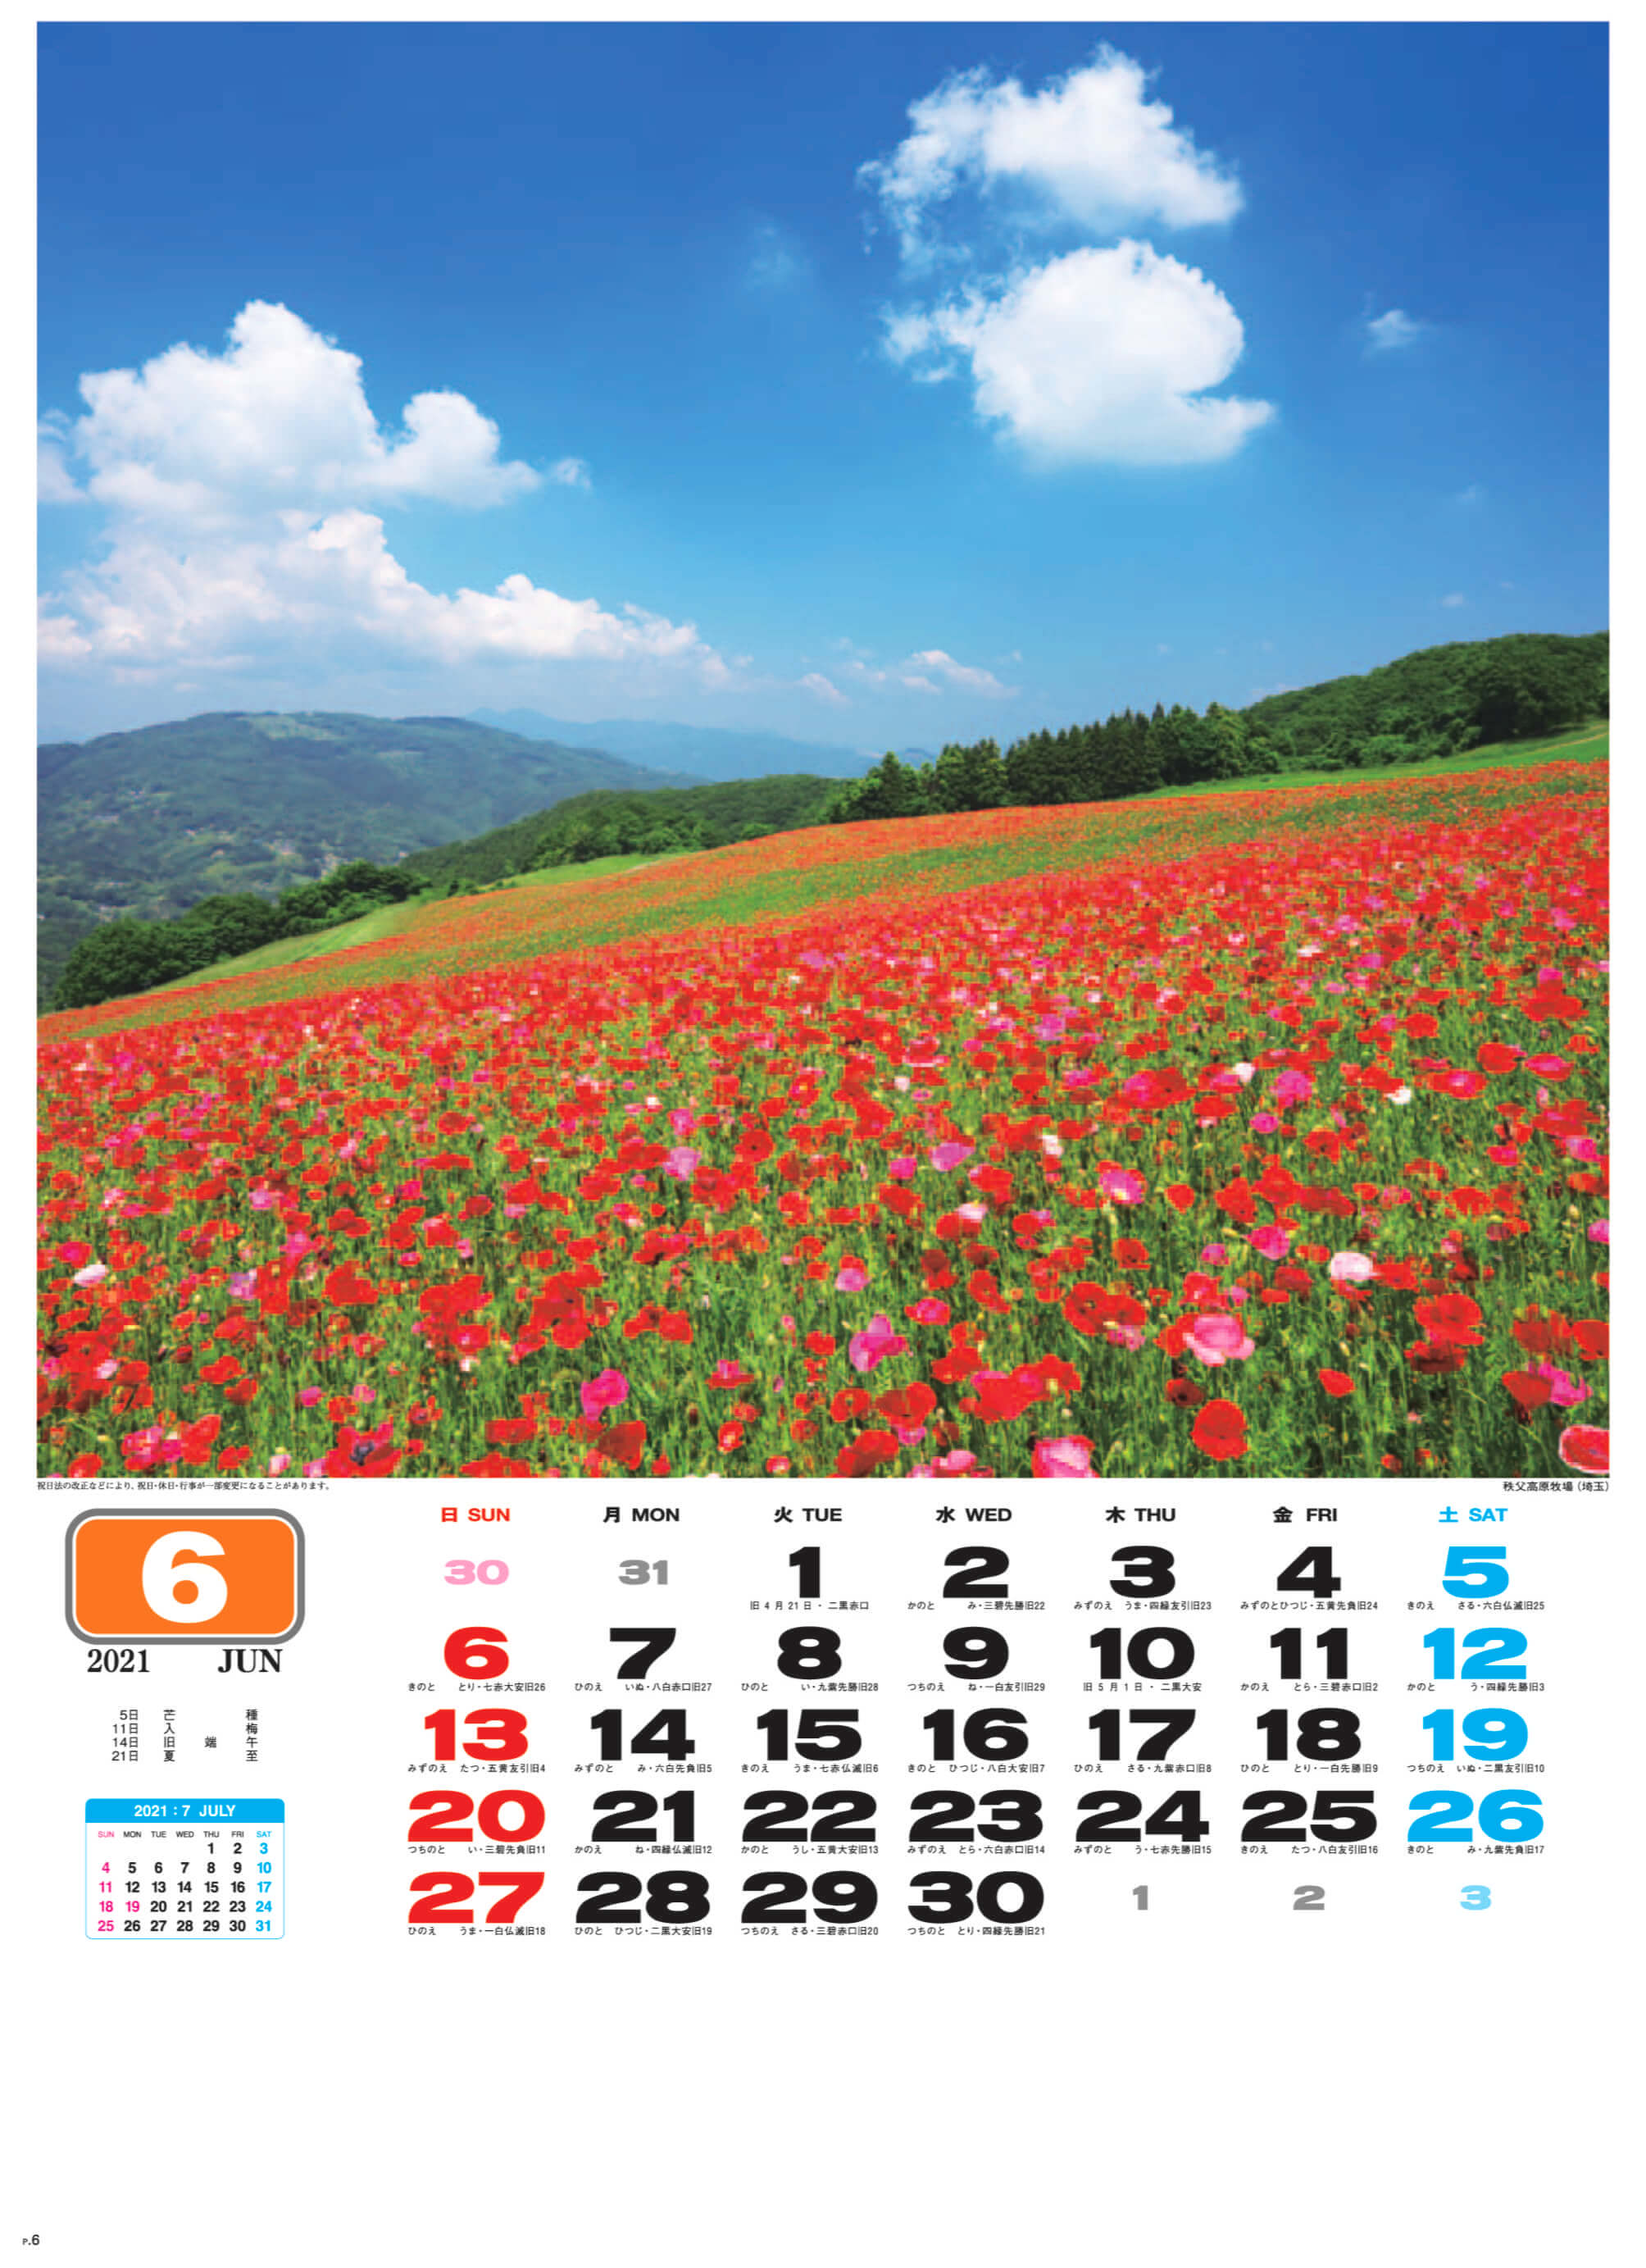 秩父高原牧場(埼玉) 美しき日本 2021年カレンダーの画像